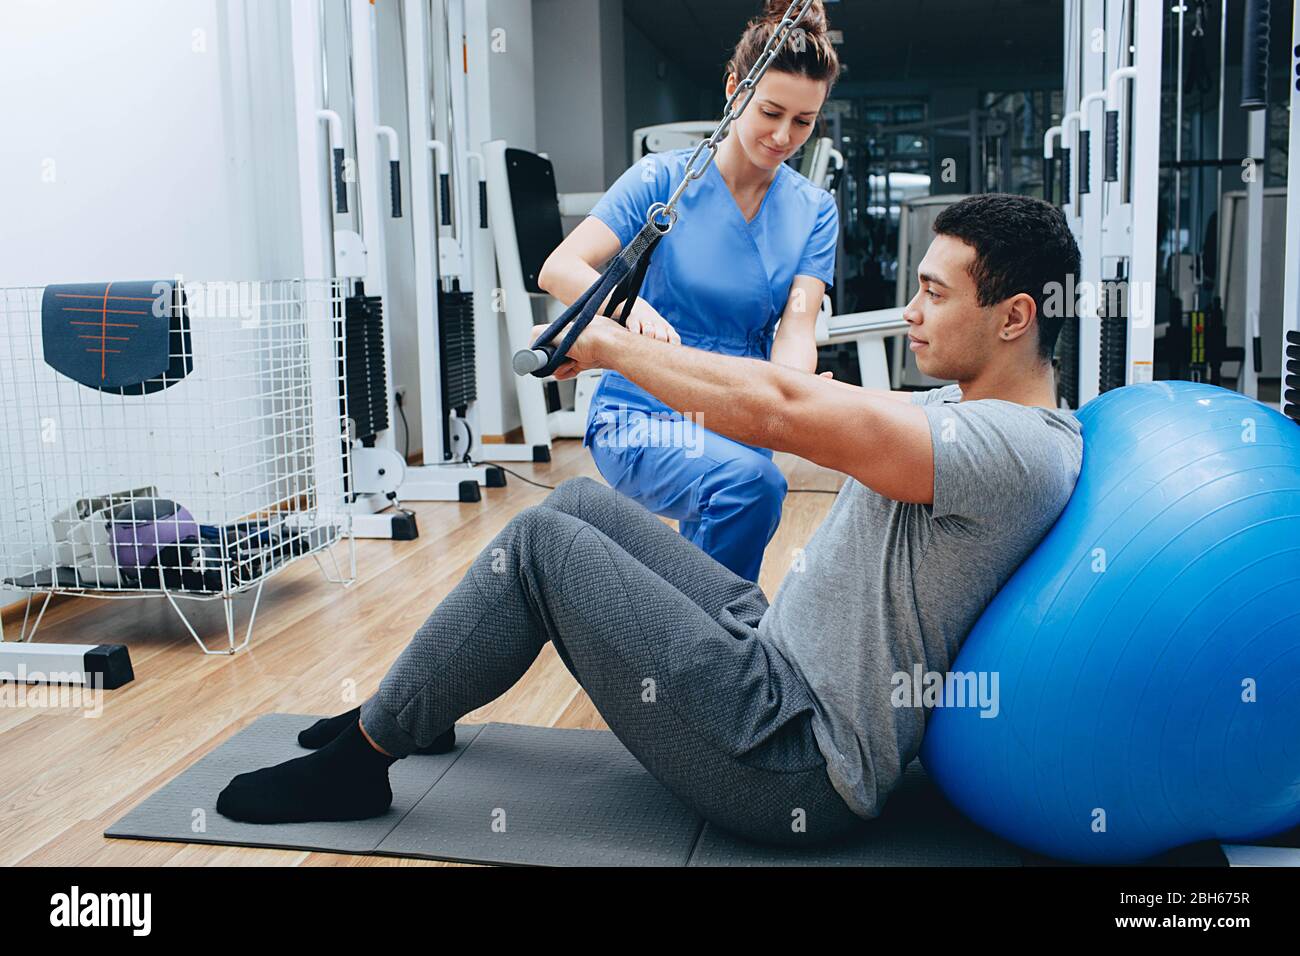 el kinesiólogo ayuda a un hombre de raza mixta a hacer ejercicios para fortalecer sus músculos de la espalda. tratamiento del dolor de espalda mediante kinesioterapia. Foto de stock